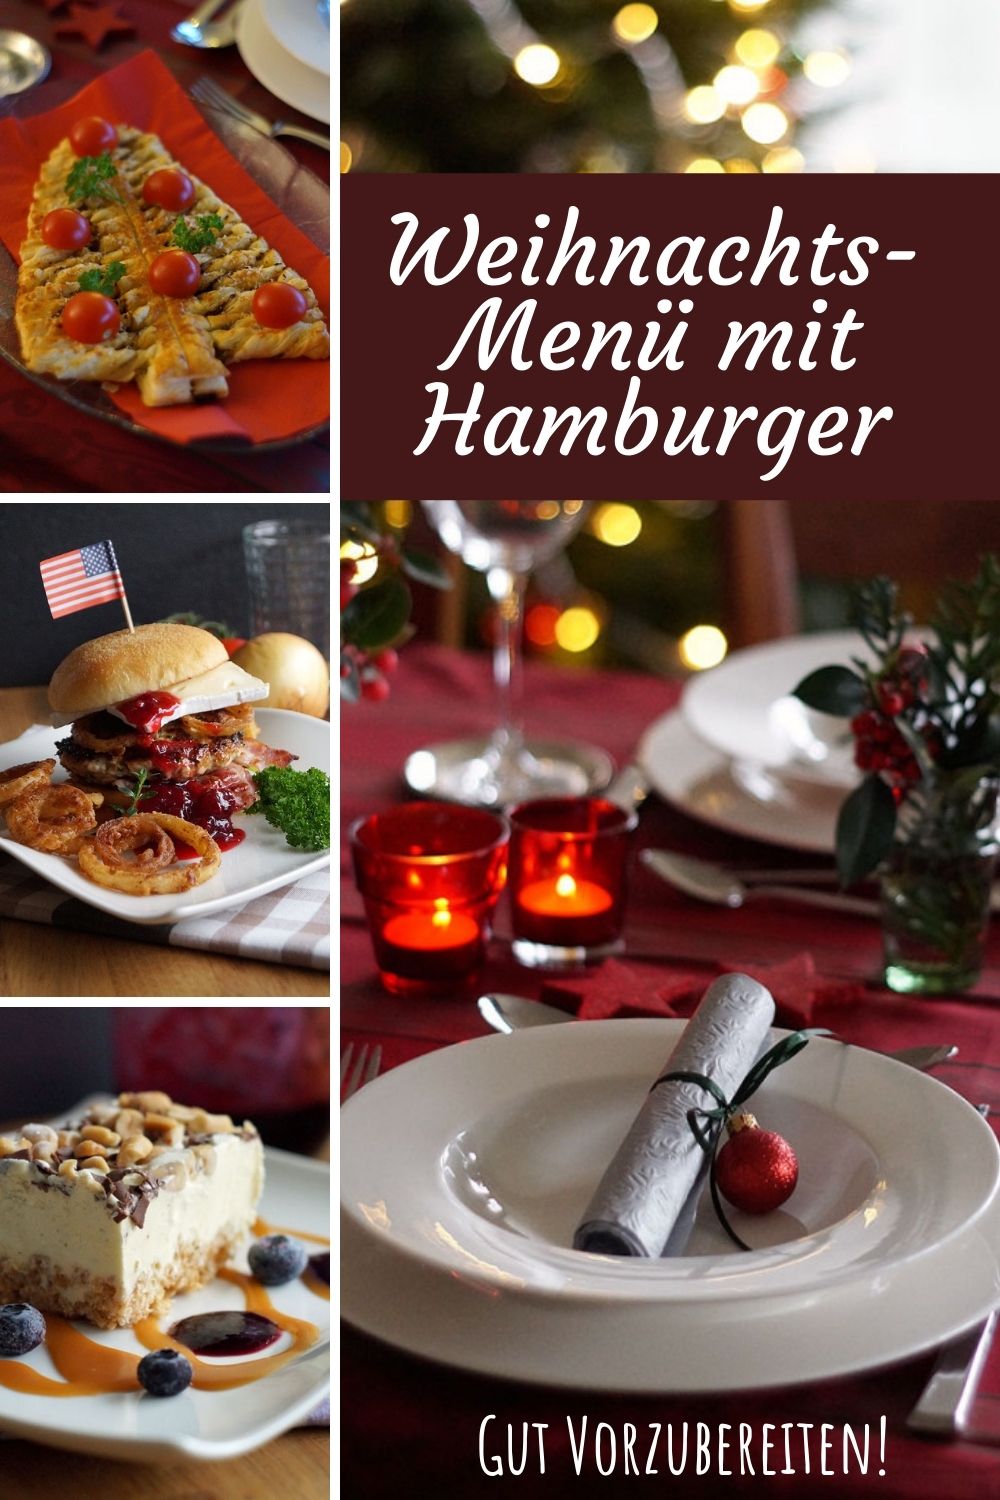 festliches Weihnachtsmenü - mit Hamburgern!